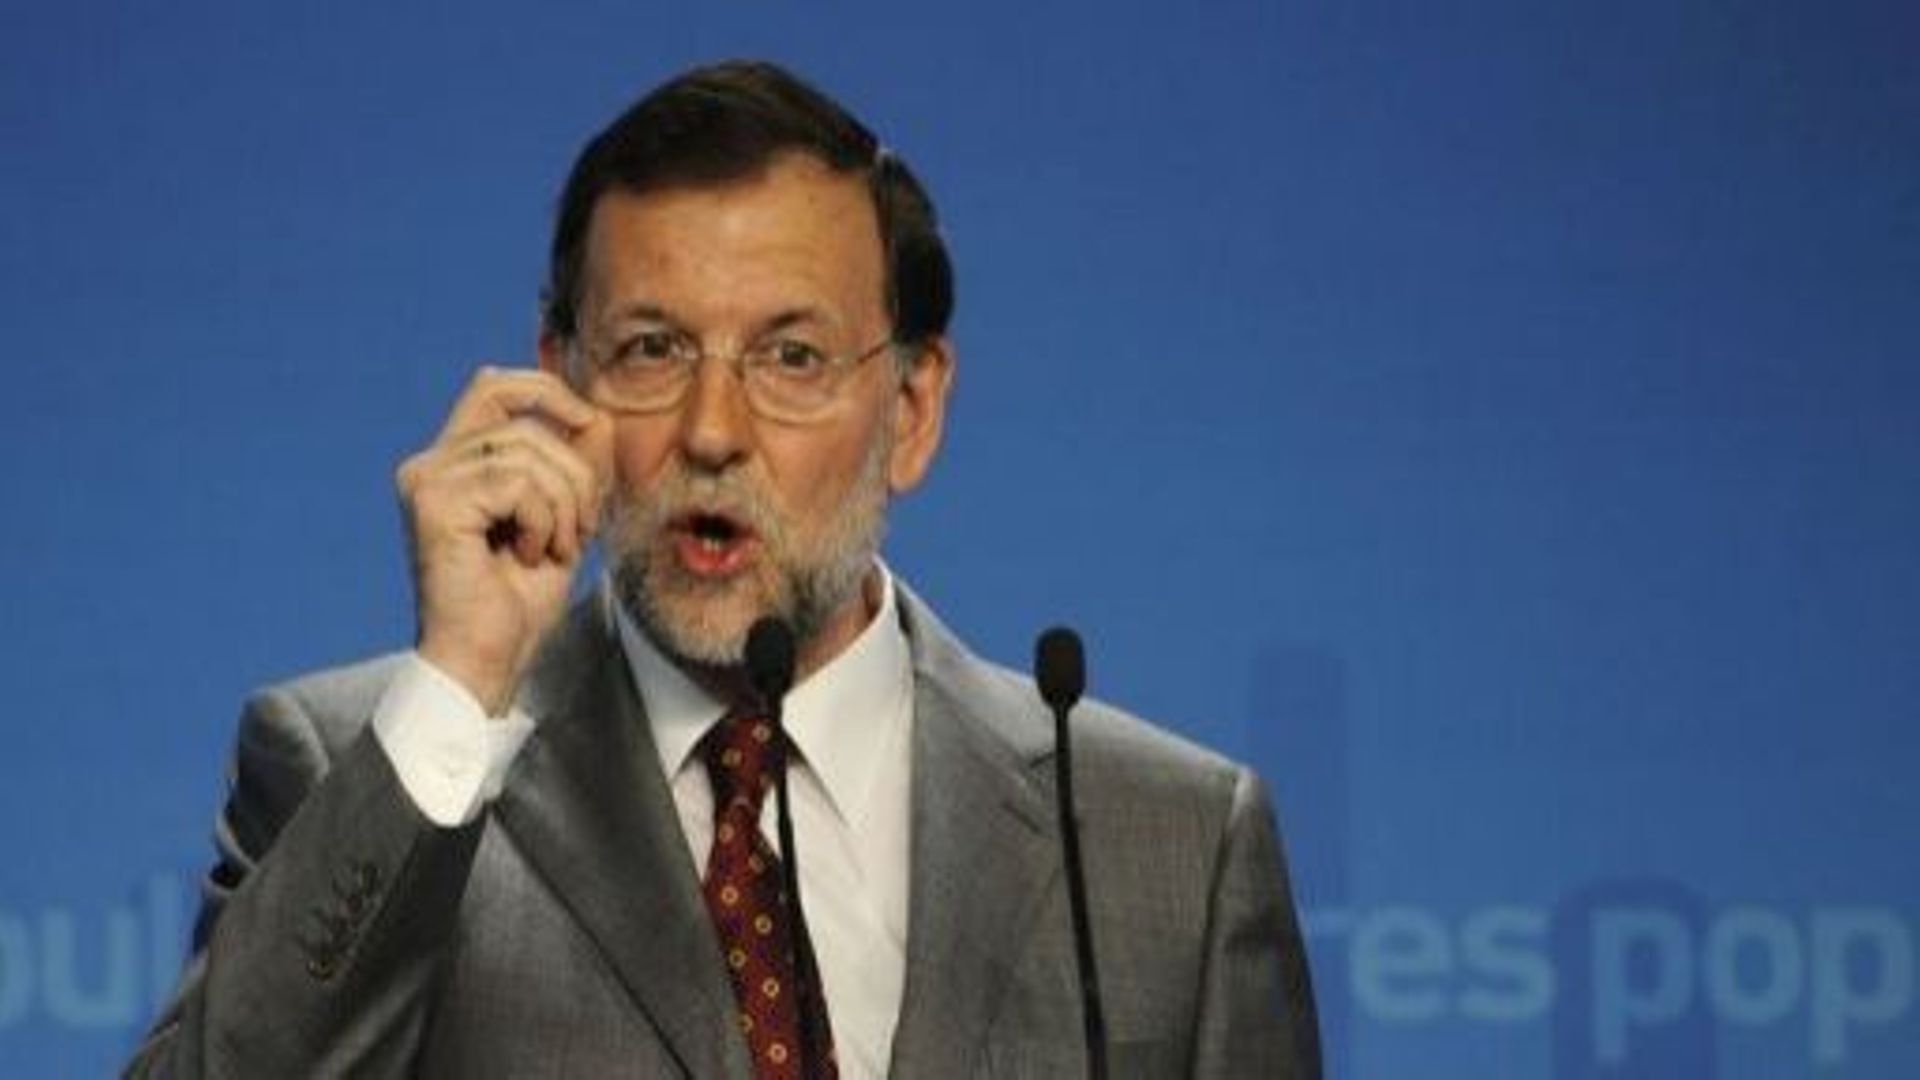 Le Premier ministre espagnol Mariano Rajoy le 28 mai 2012 à Madrid